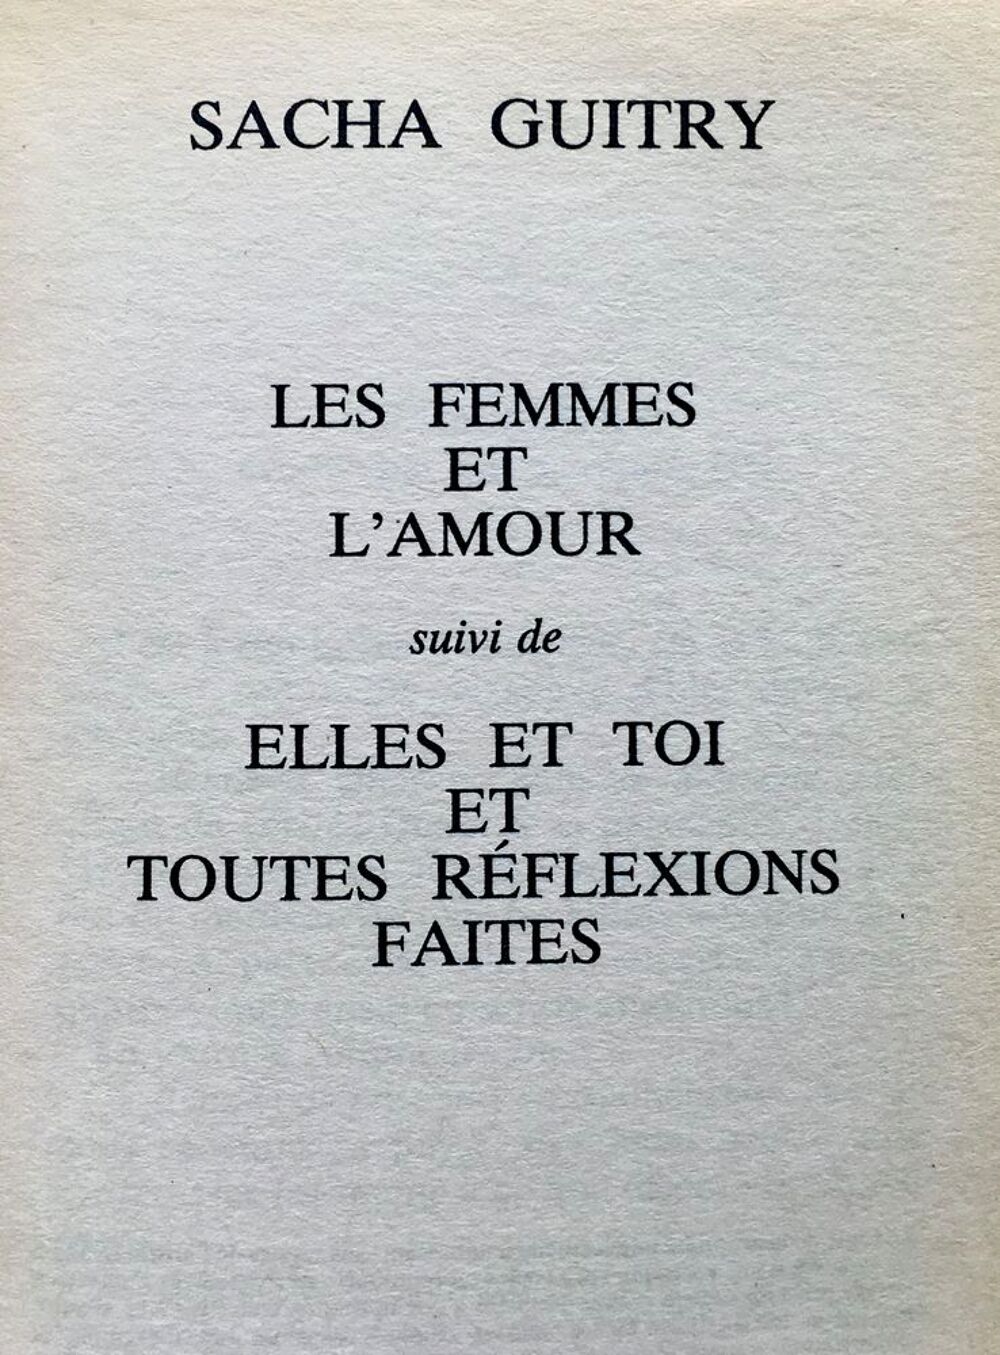 Sacha Guitry; 2 livres: Deux couverts /Les femmes et l'amour Livres et BD